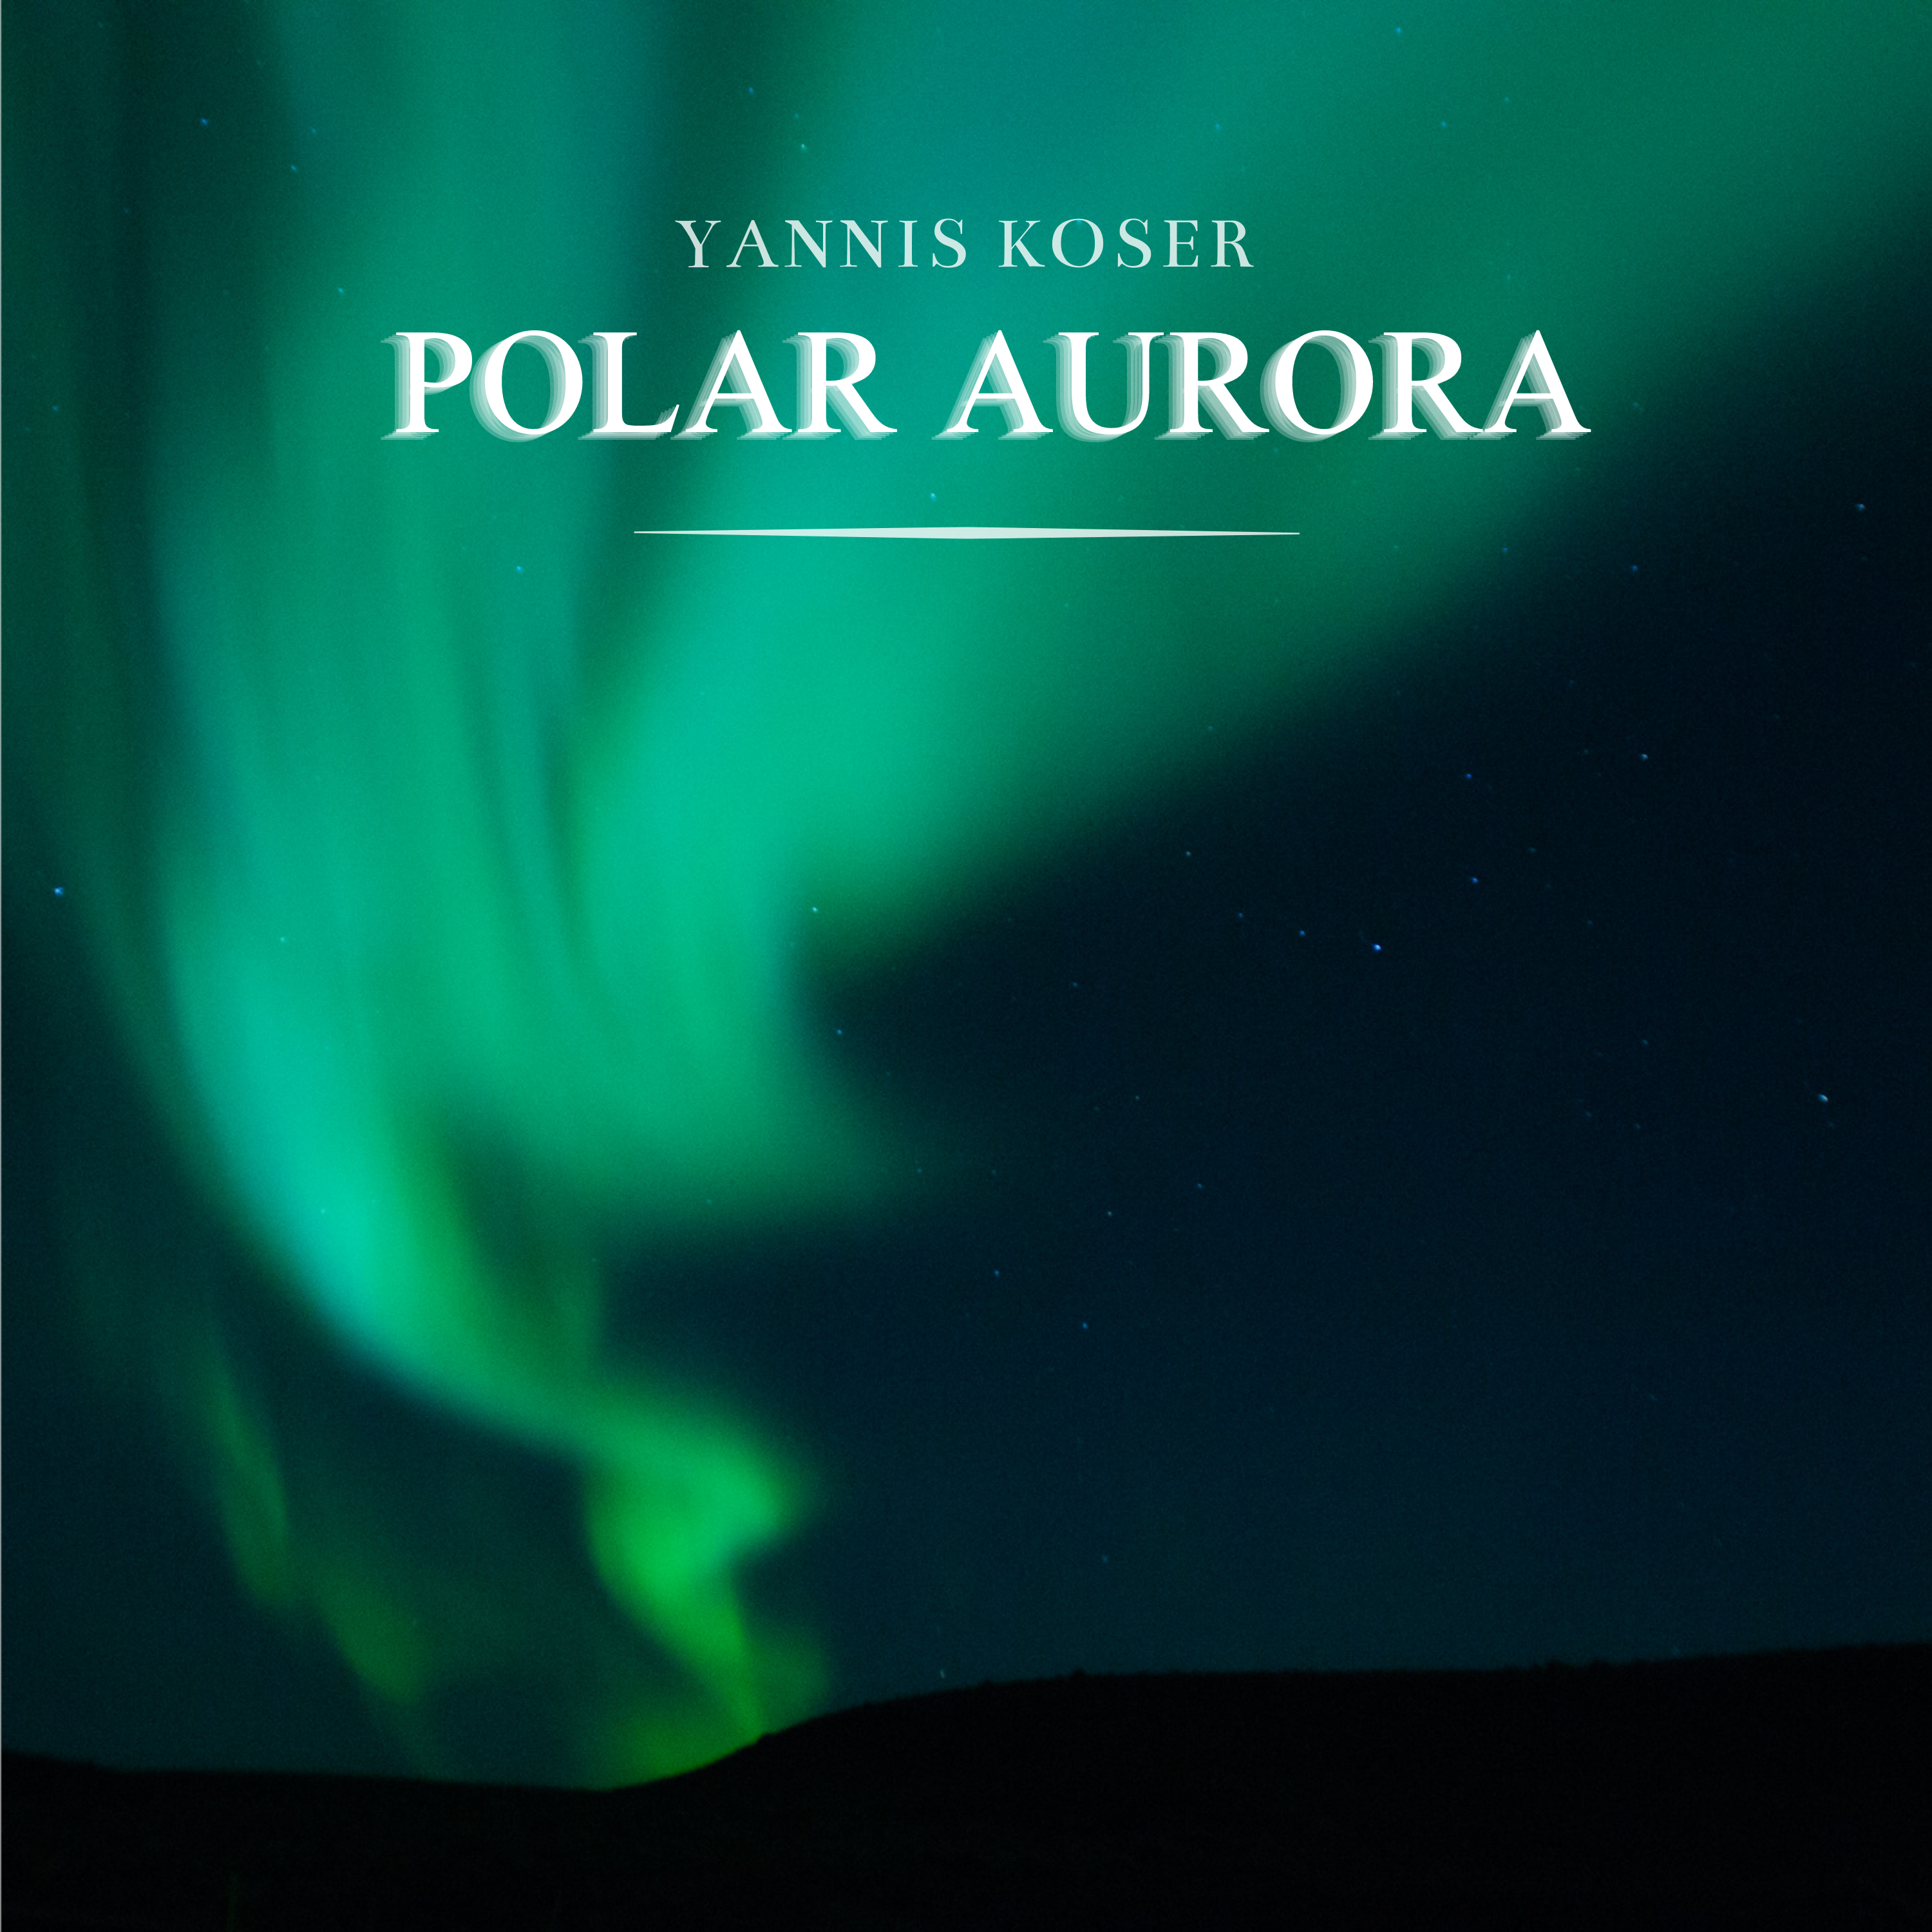 Yannis Koser – “Polar Aurora”